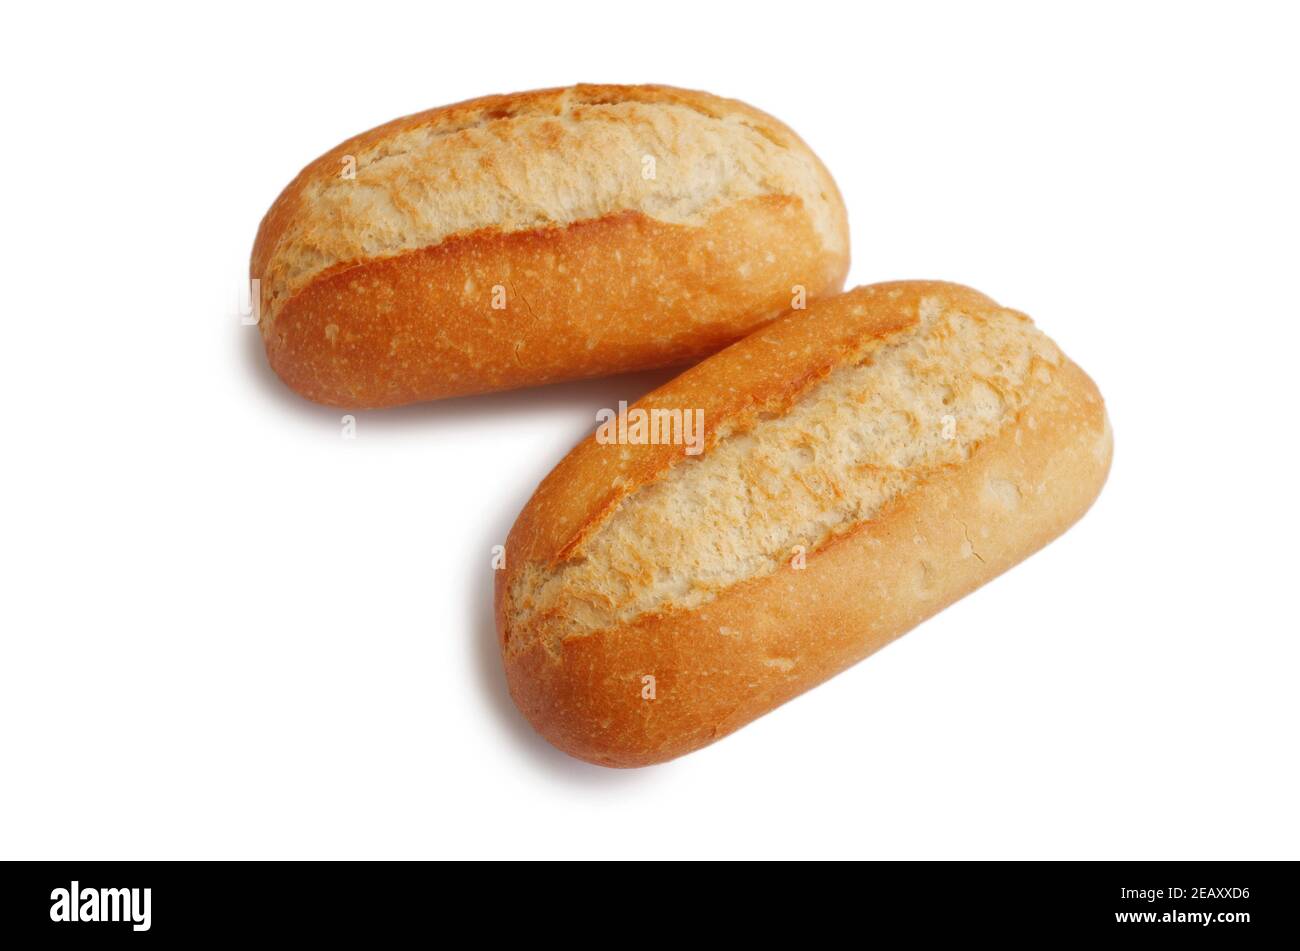 Zwei frische knusprige Mini-Baguettes isoliert auf weißem Untergrund. Kleine Baguette-Brötchen. Essen und Frühstück Hintergrund. Weltweites Hungerkonzept. Stockfoto